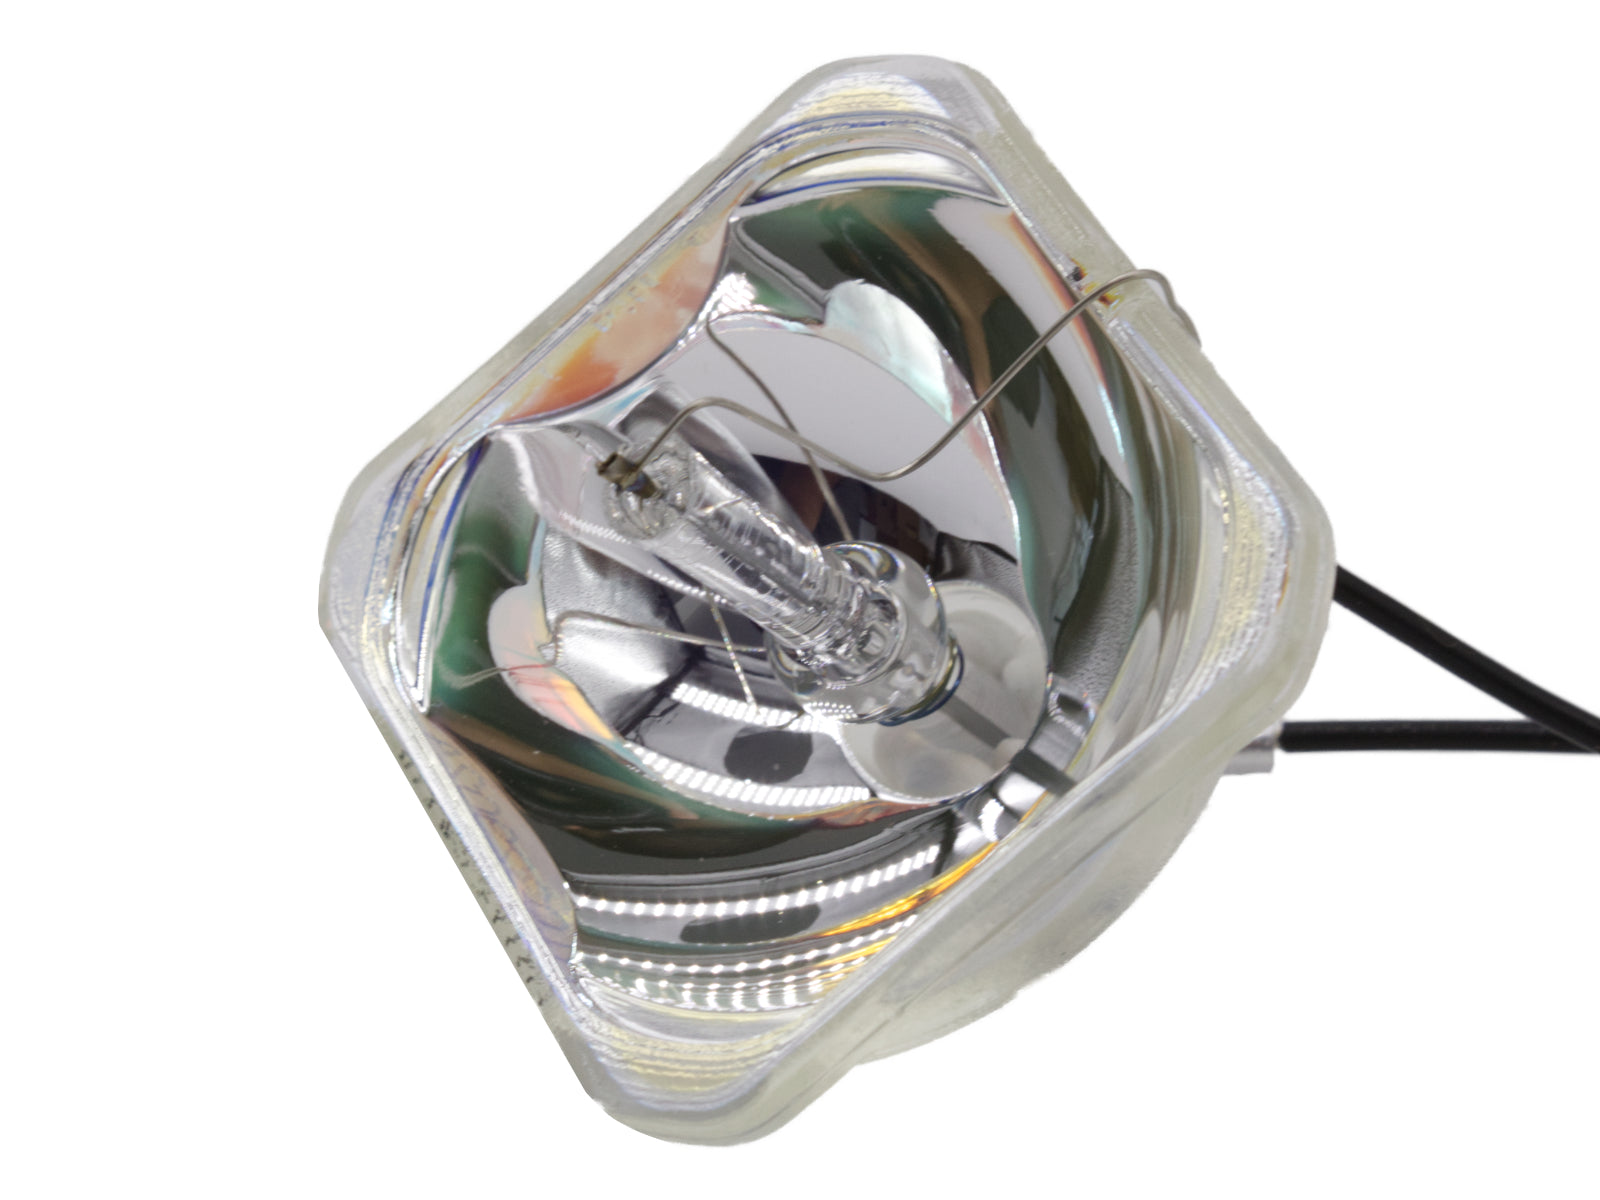 azurano Beamerlampe für EPSON ELPLP57, V13H010L57 Ersatzlampe Projektorlampe - Bild 3